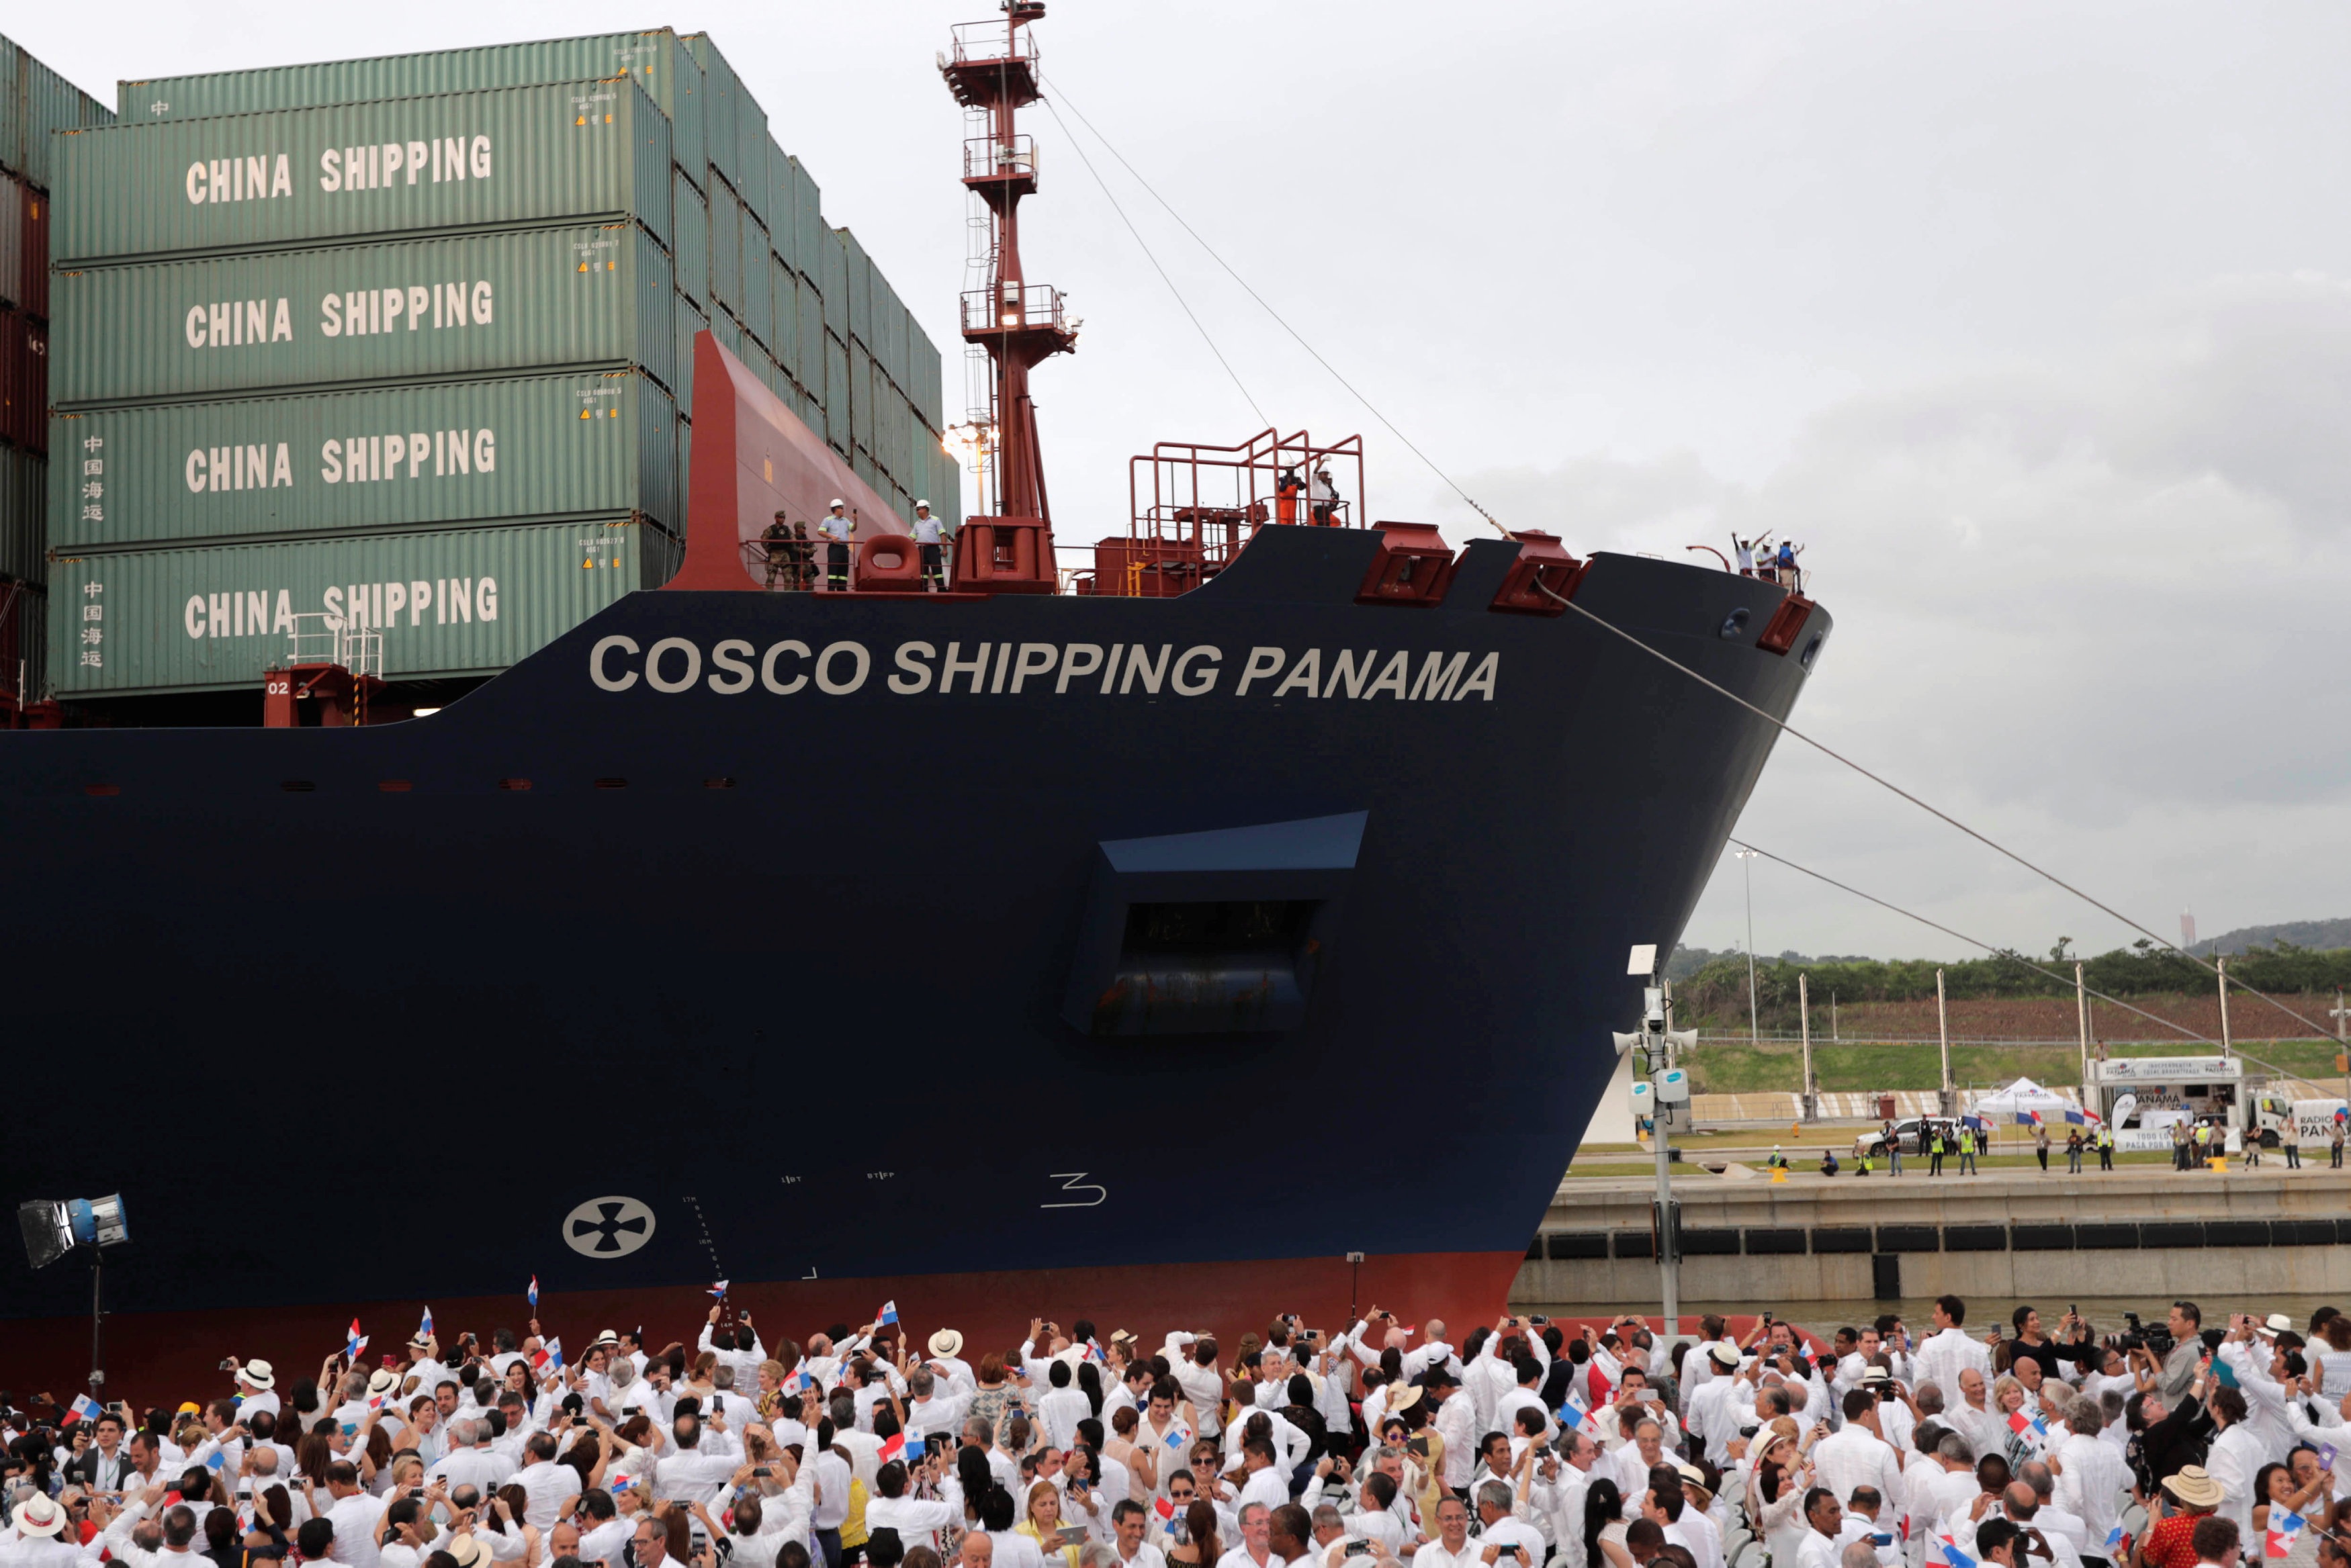 Ông Oscar Bazan, Phó Chủ tịch cơ quan quản lý kênh đào Panama, khẳng định: “Kênh đào Panama mở rộng sẽ đóng một vai trò quan trọng không chỉ về hàng hải mà cho cả thương mại toàn cầu. Khách hàng sẽ được hưởng lợi vì tiết kiệm được cả thời gian và chi phí do đoạn đường di chuyển đã được rút ngắn nhờ có kênh đào” (Ảnh: Reuters)